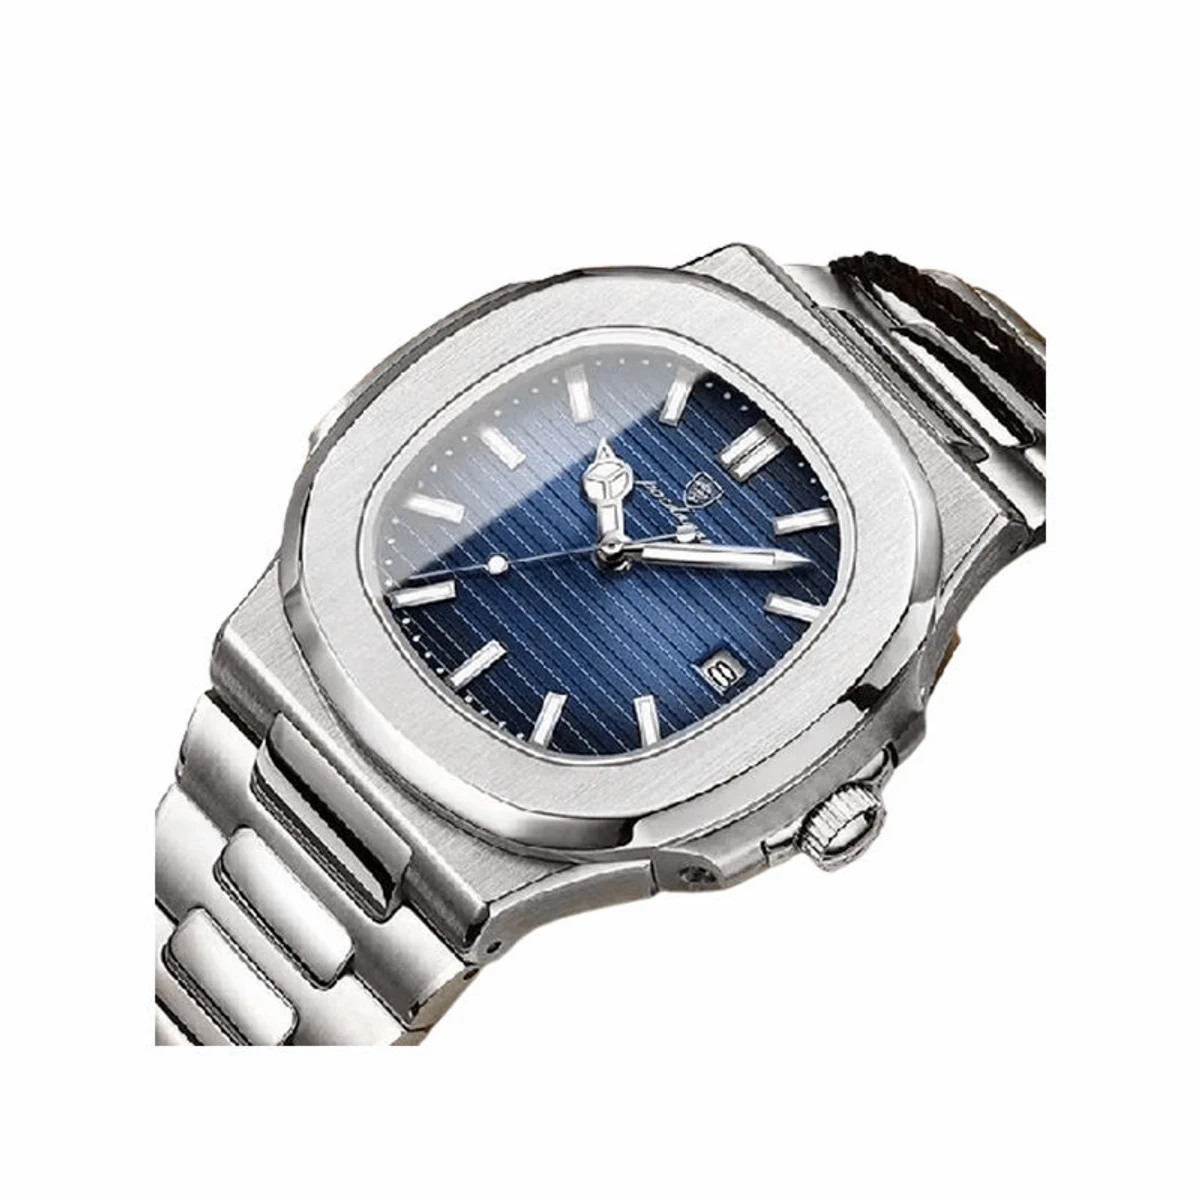 Poedagar 613 Business Quartz Luxury Stainless Steel Watch for Men – Silver Blue